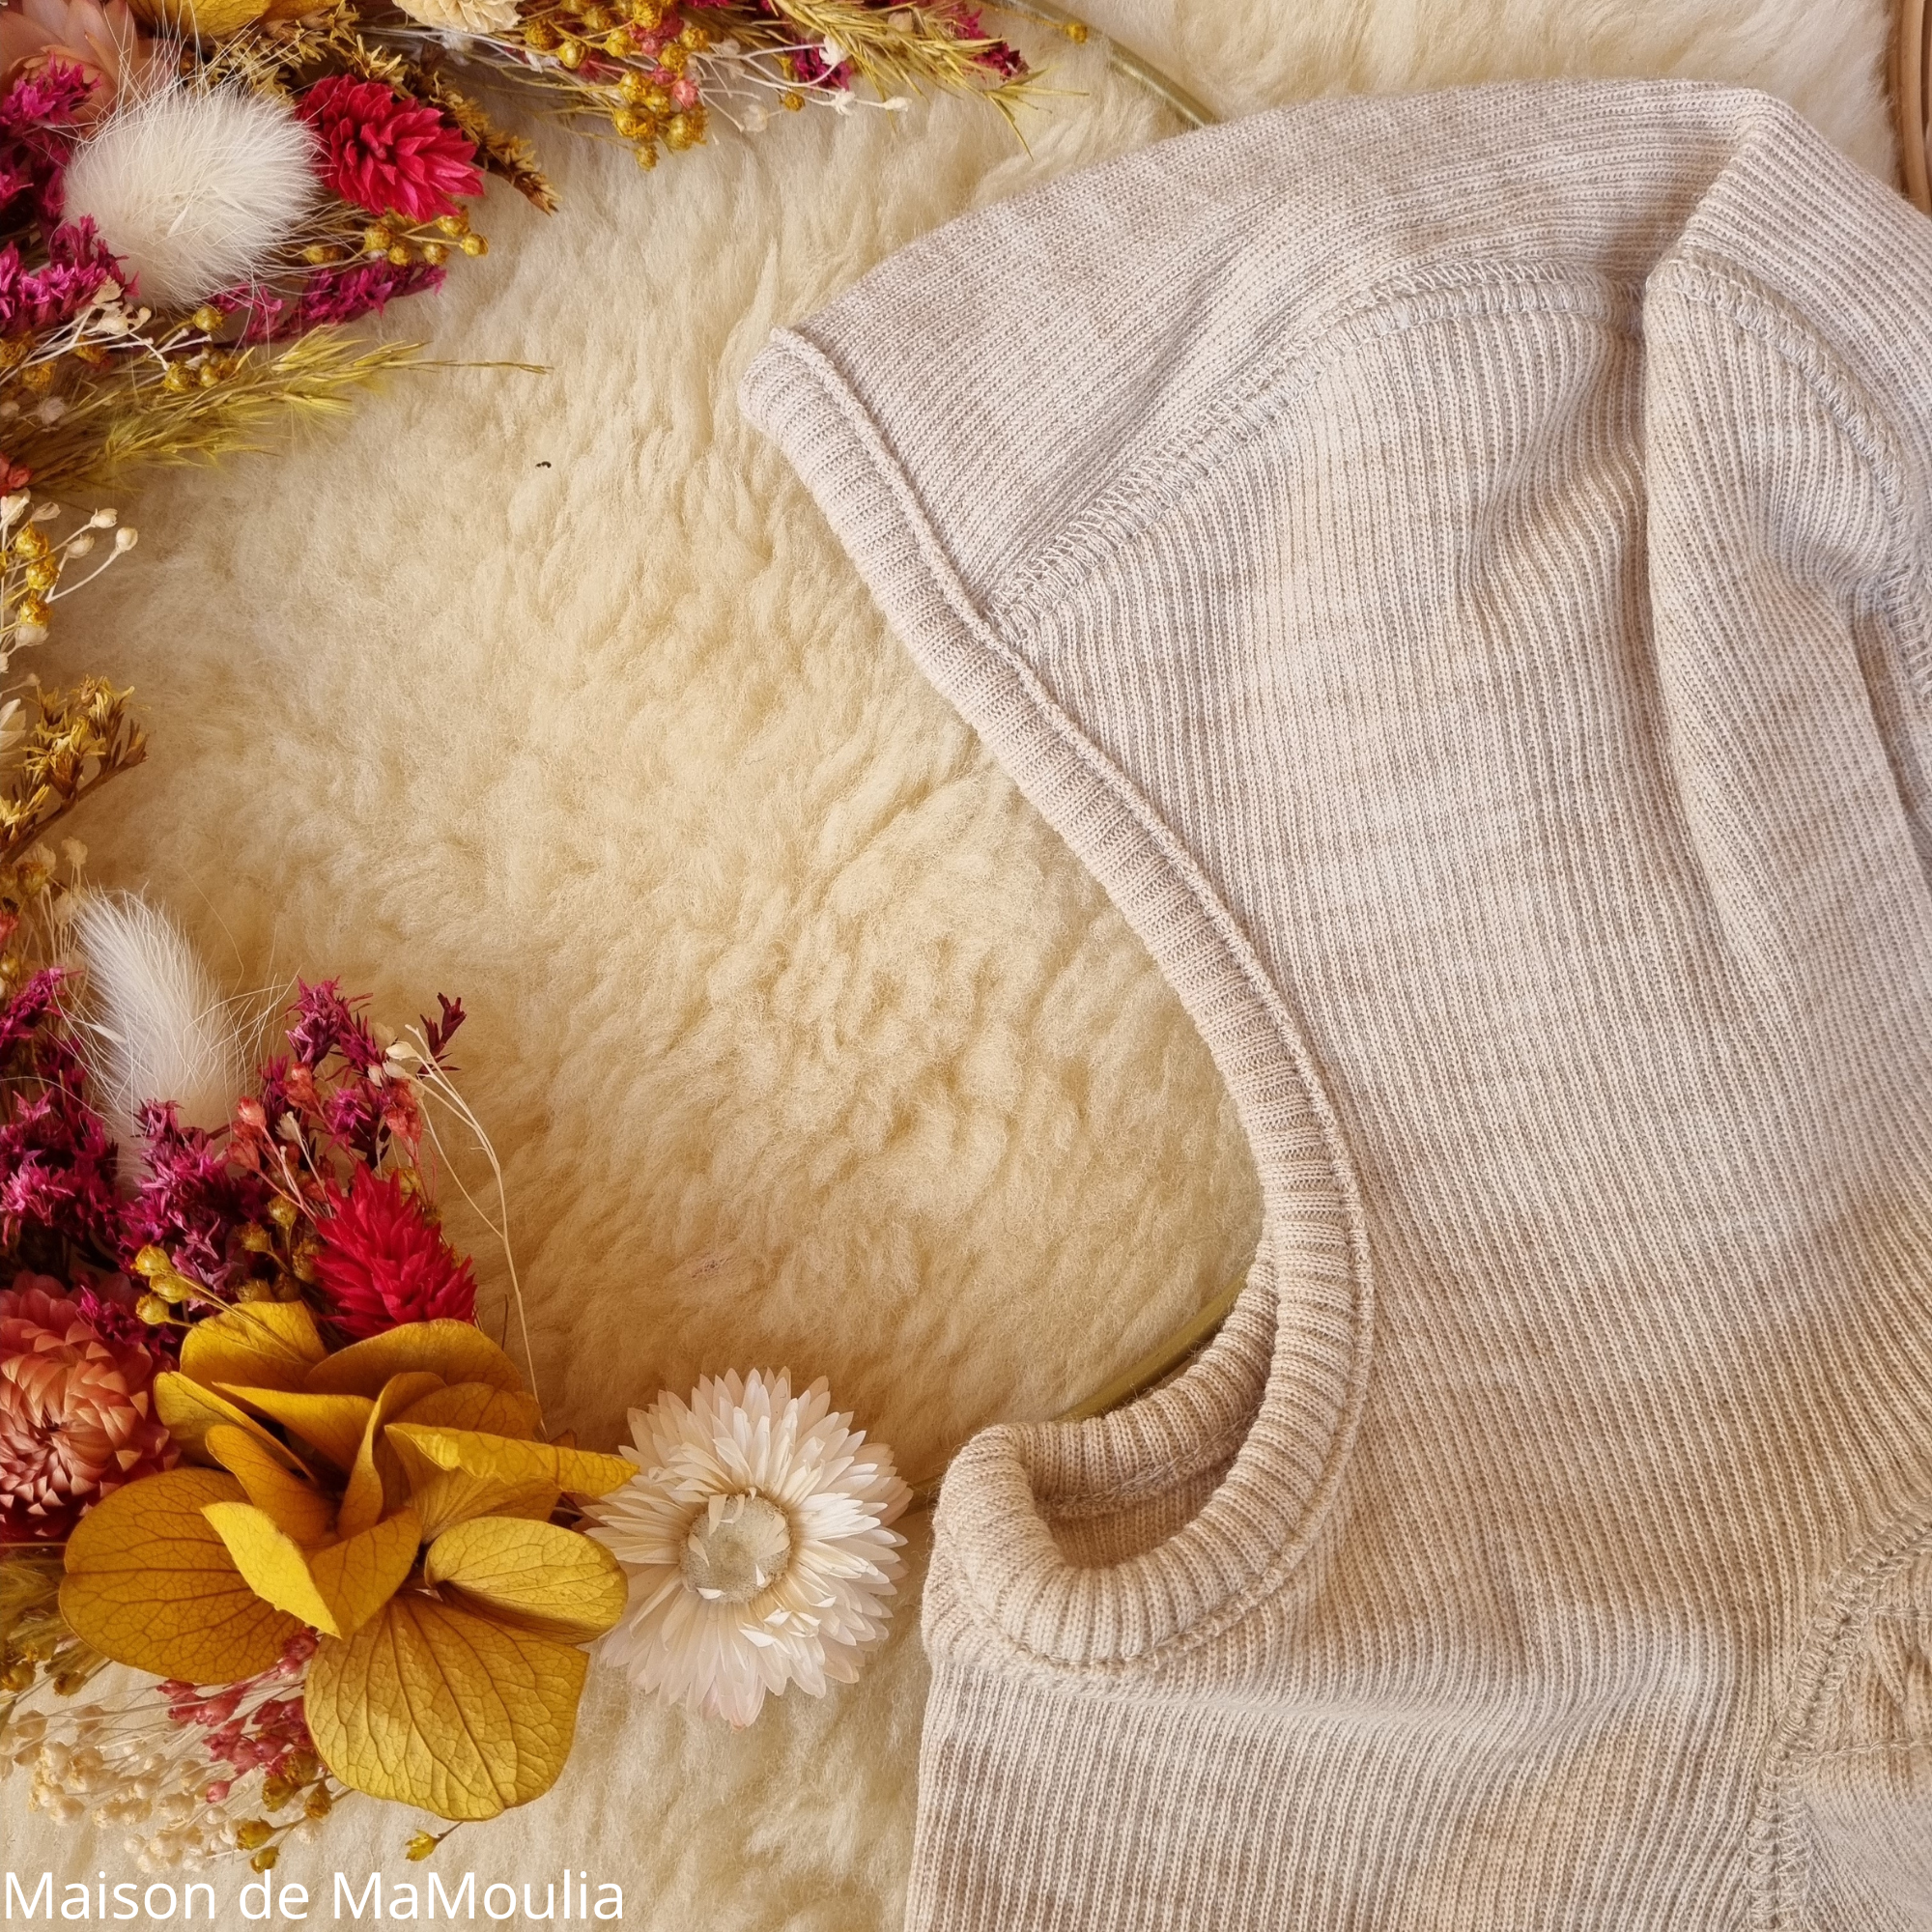 Cagoule manymonths en laine mérinos pour enfant et adulte